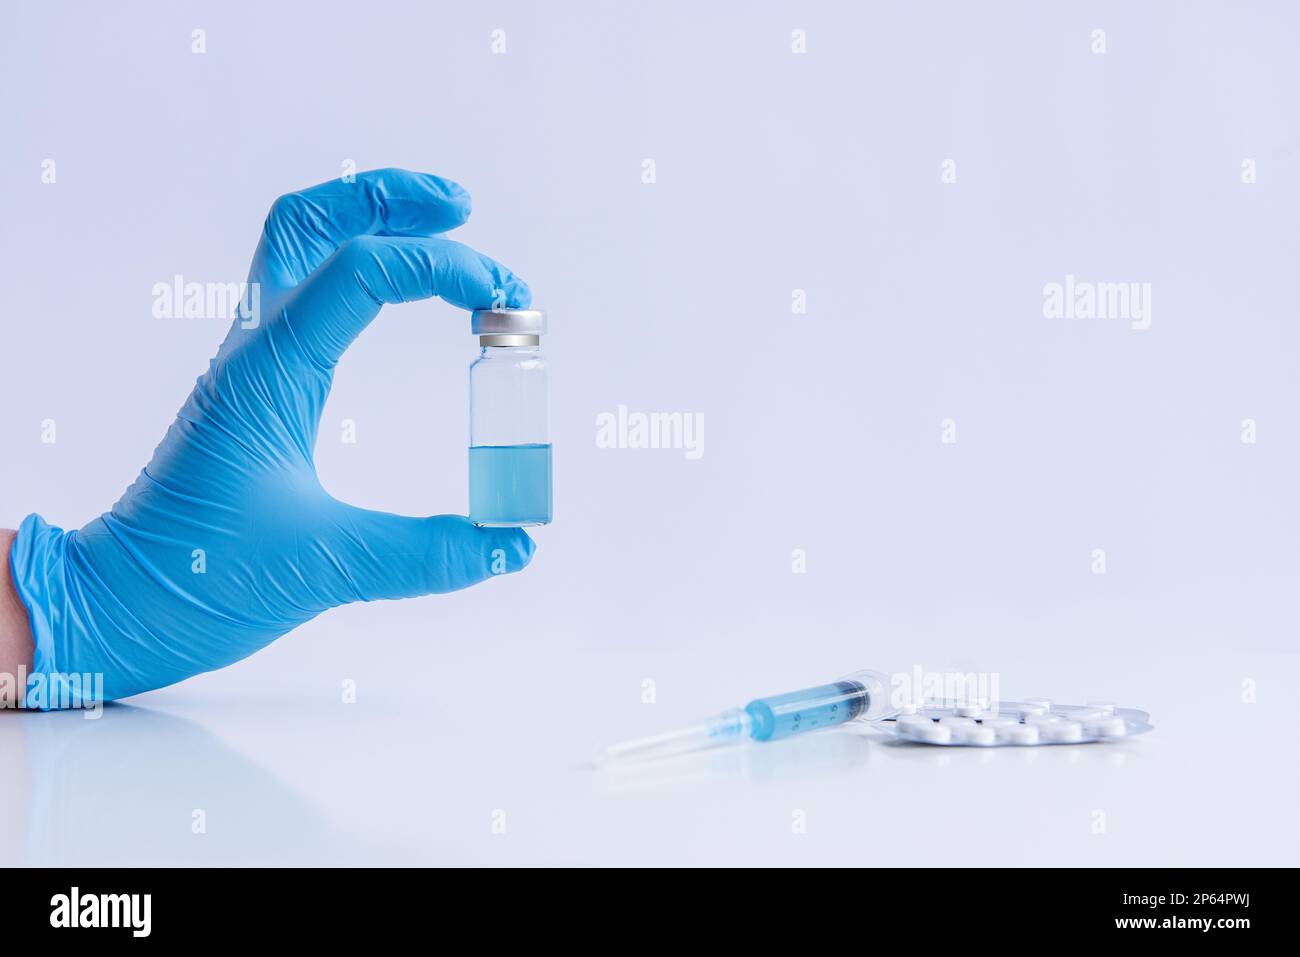 Auf weißem isoliertem Hintergrund halten die Hände des Arztes in medizinischen blauen Handschuhen eine Ampulle Impfstoff gegen Virus Coronovirus. Spritze mit Gegenmittel, Schmerztabletten Stockfoto